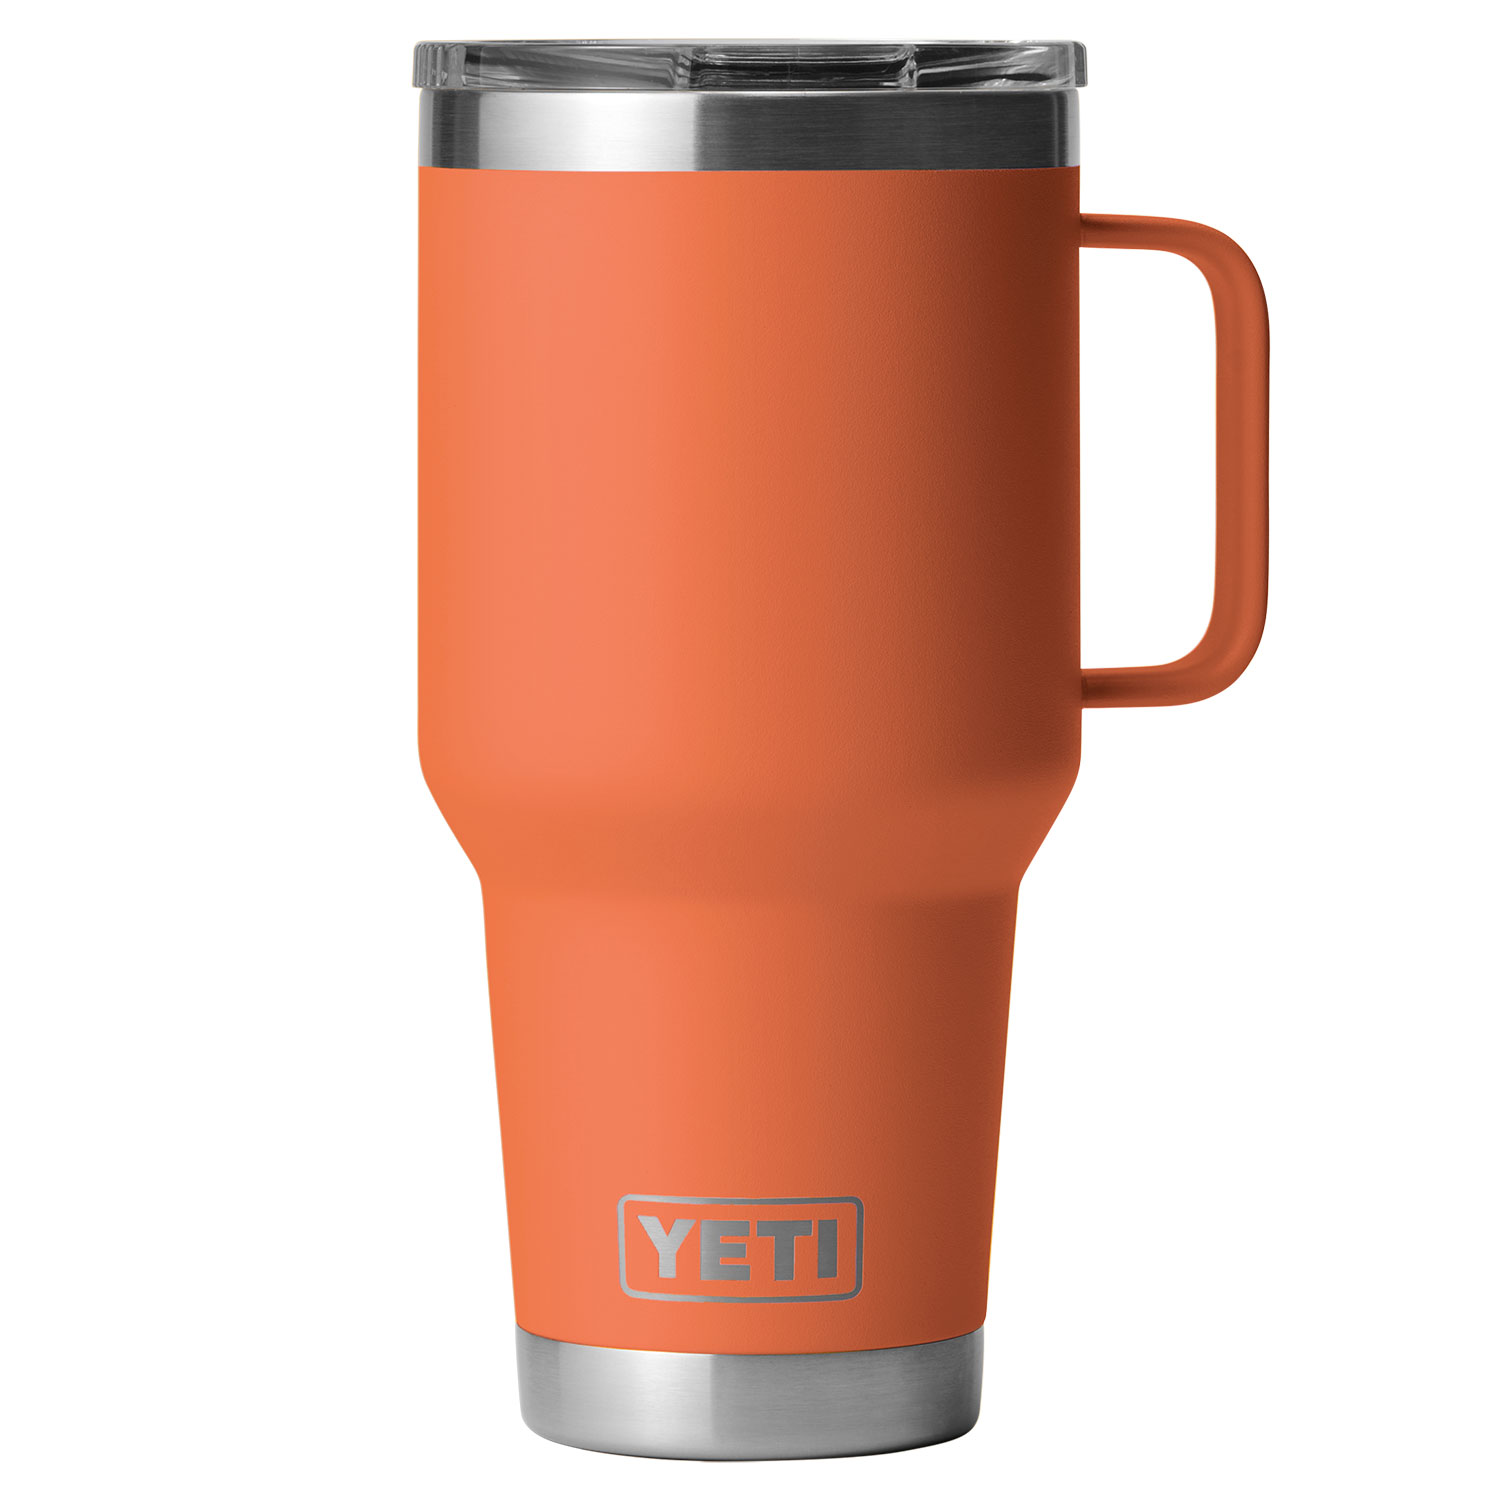 YETI Rambler Vacuum Travel Mug with Stronghold Lid - 30 fl. oz.